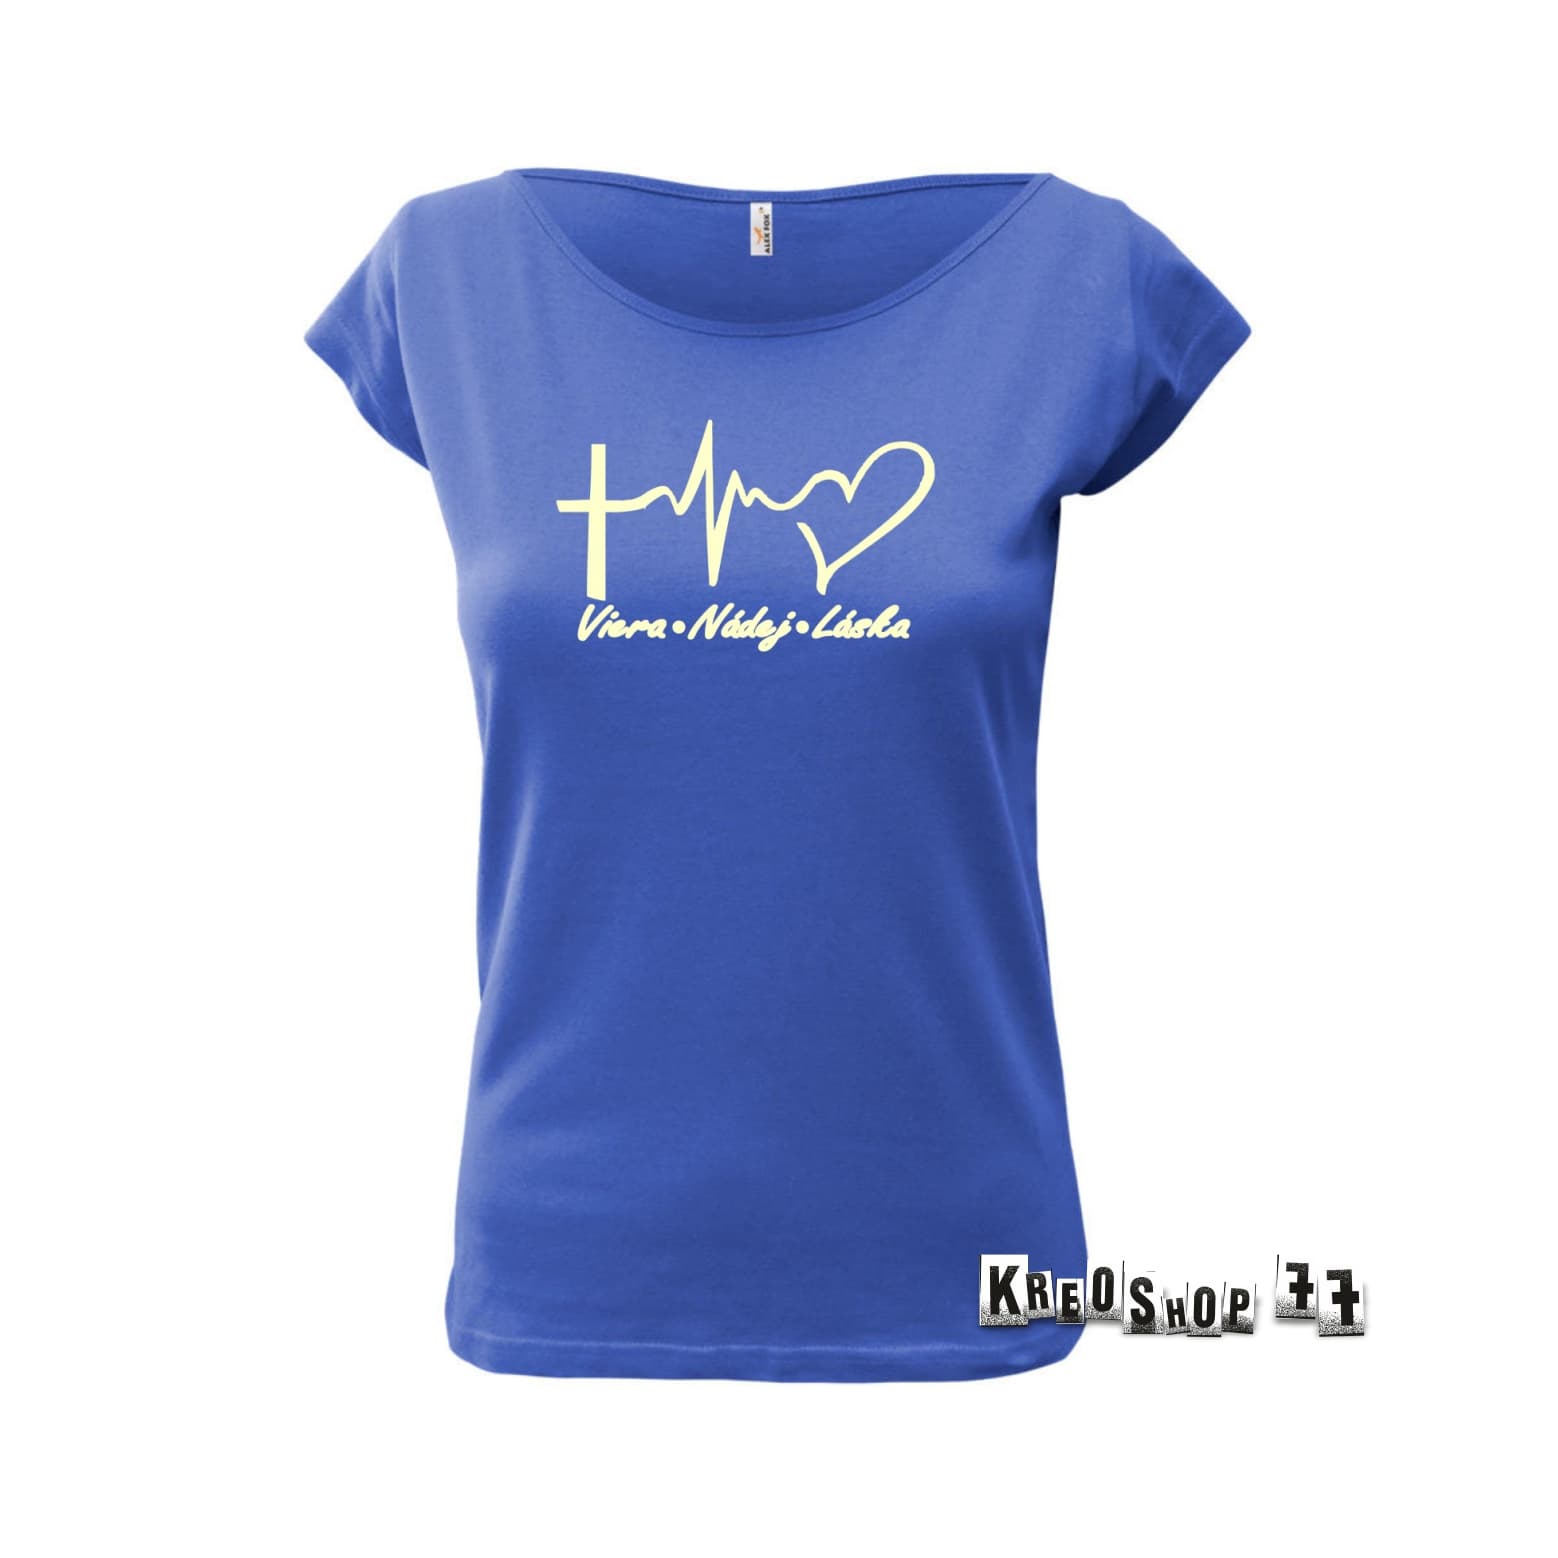 Dámske kresťanské tričko - Viera, nádej, láska - Modré